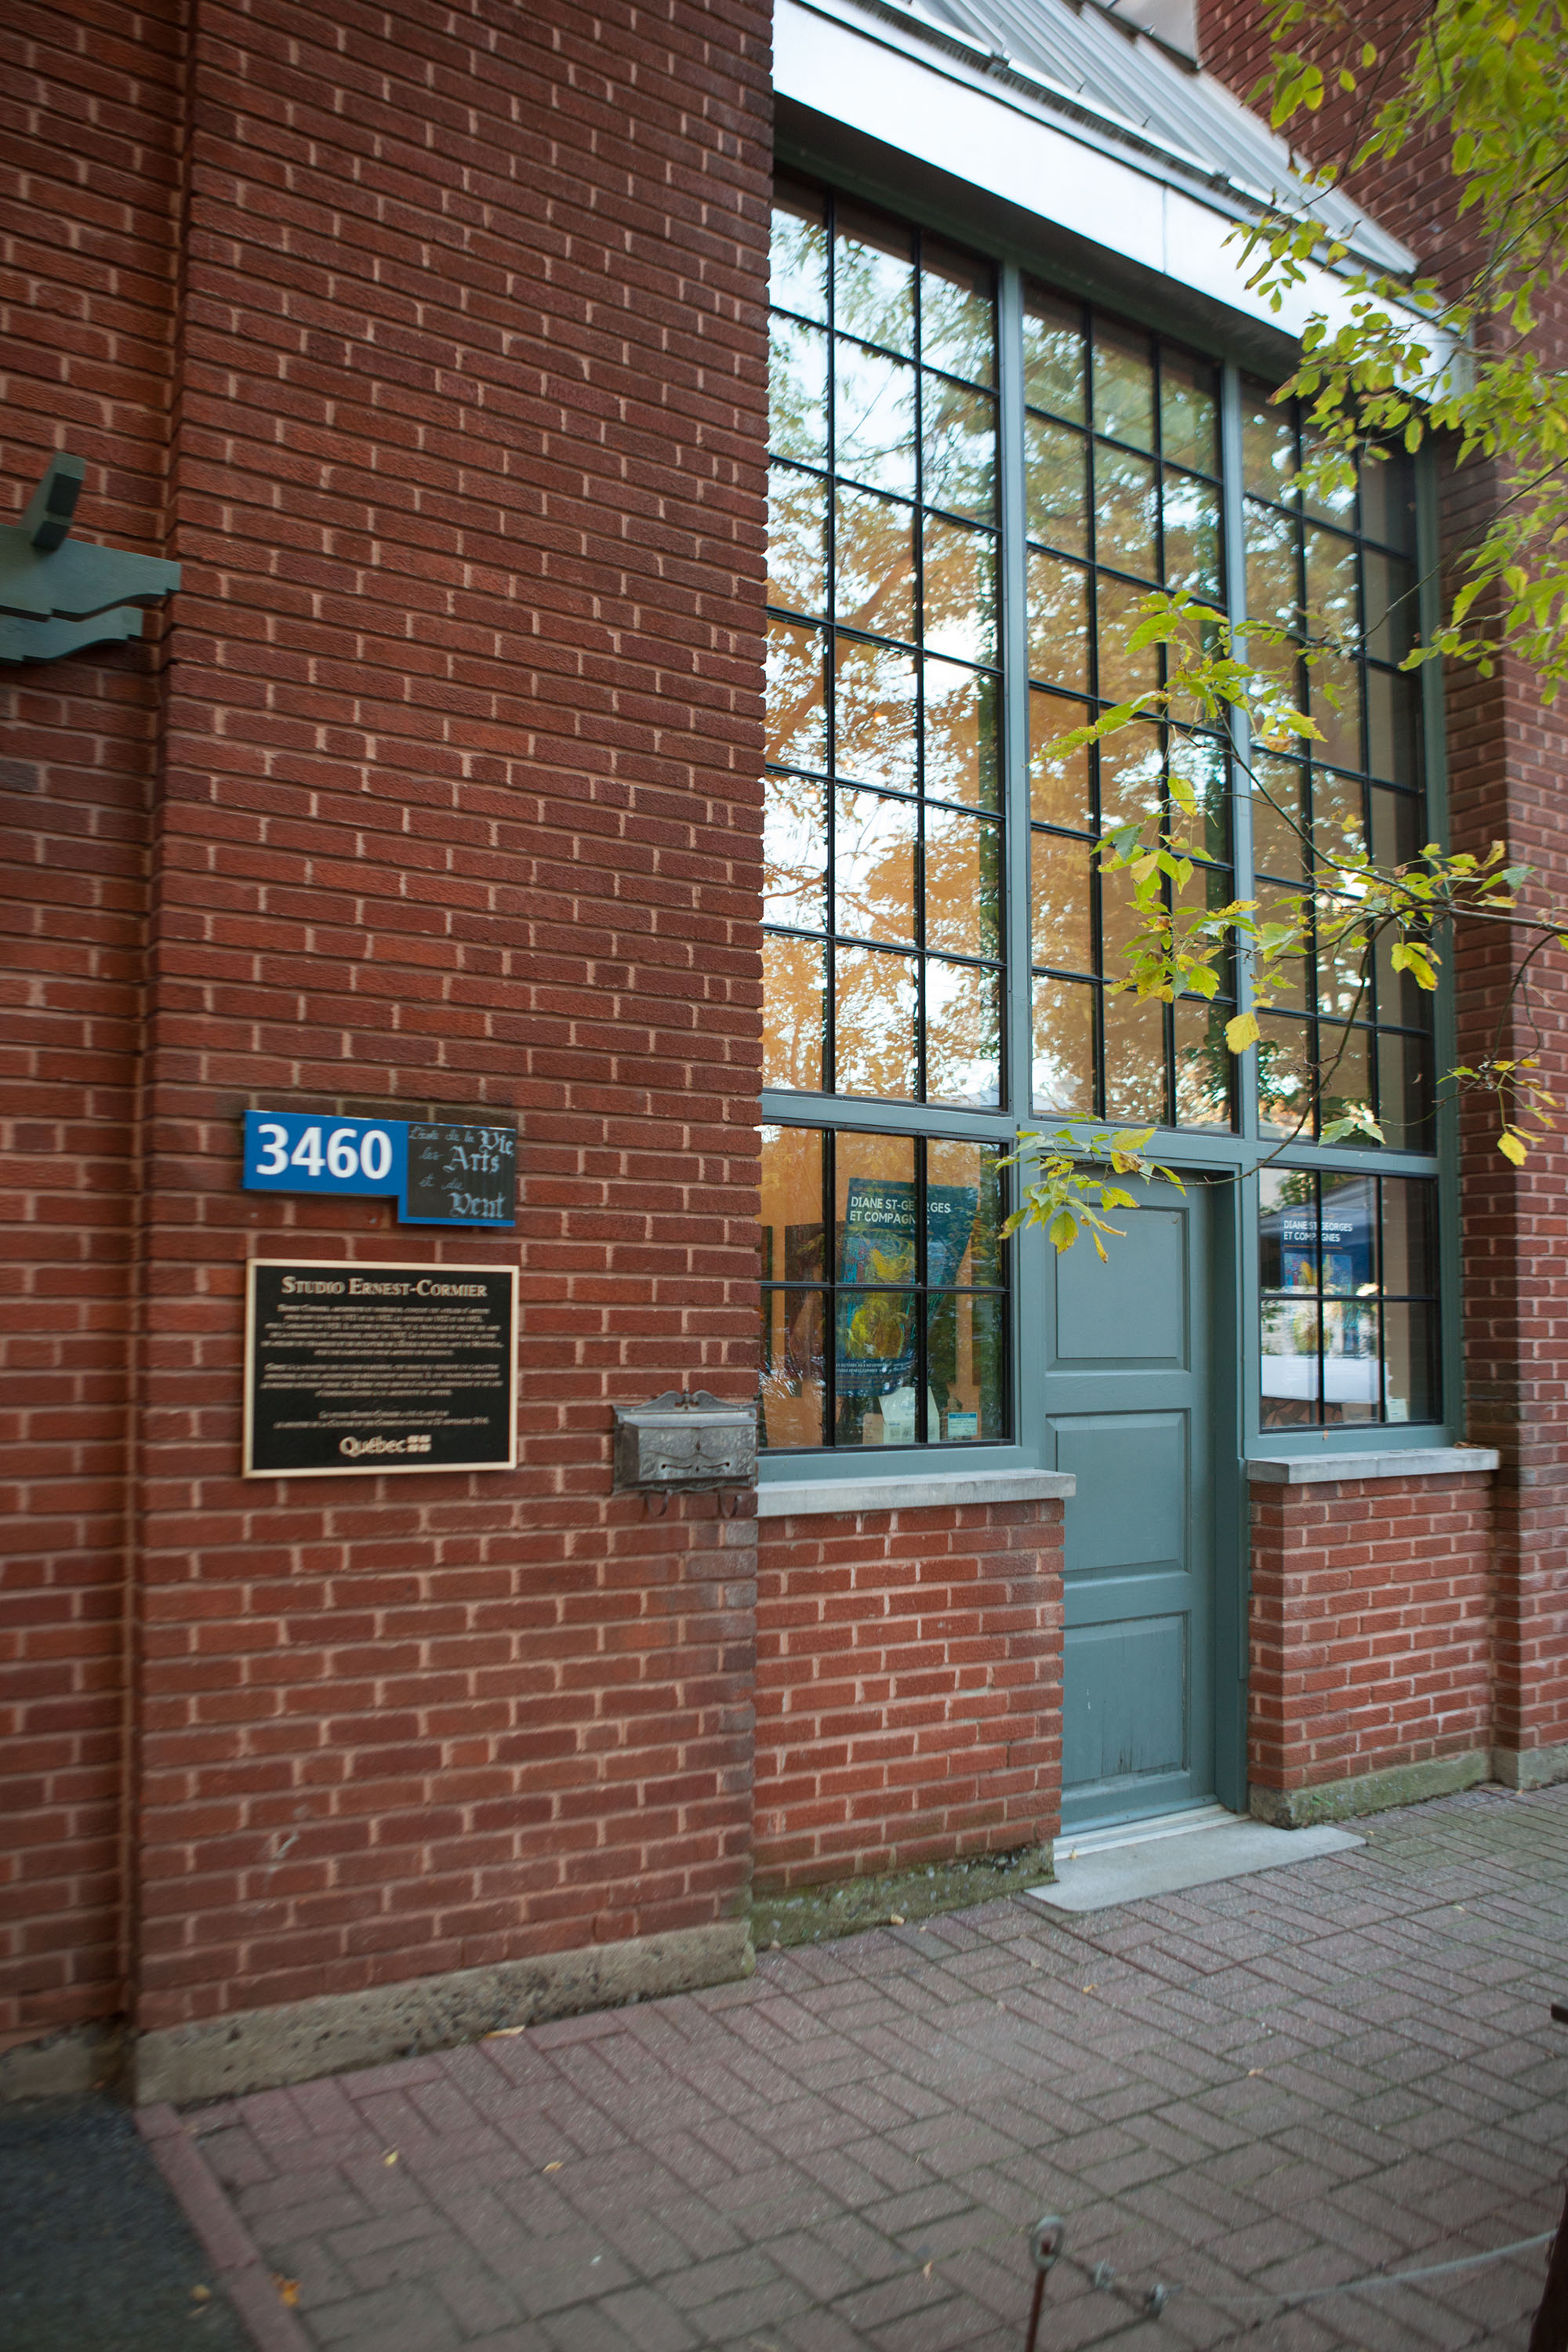 Photo couleur en plan rapproché de la façade d’un bâtiment de brique rouge avec une grande verrière au-dessus et autour de la porte d’entrée. 